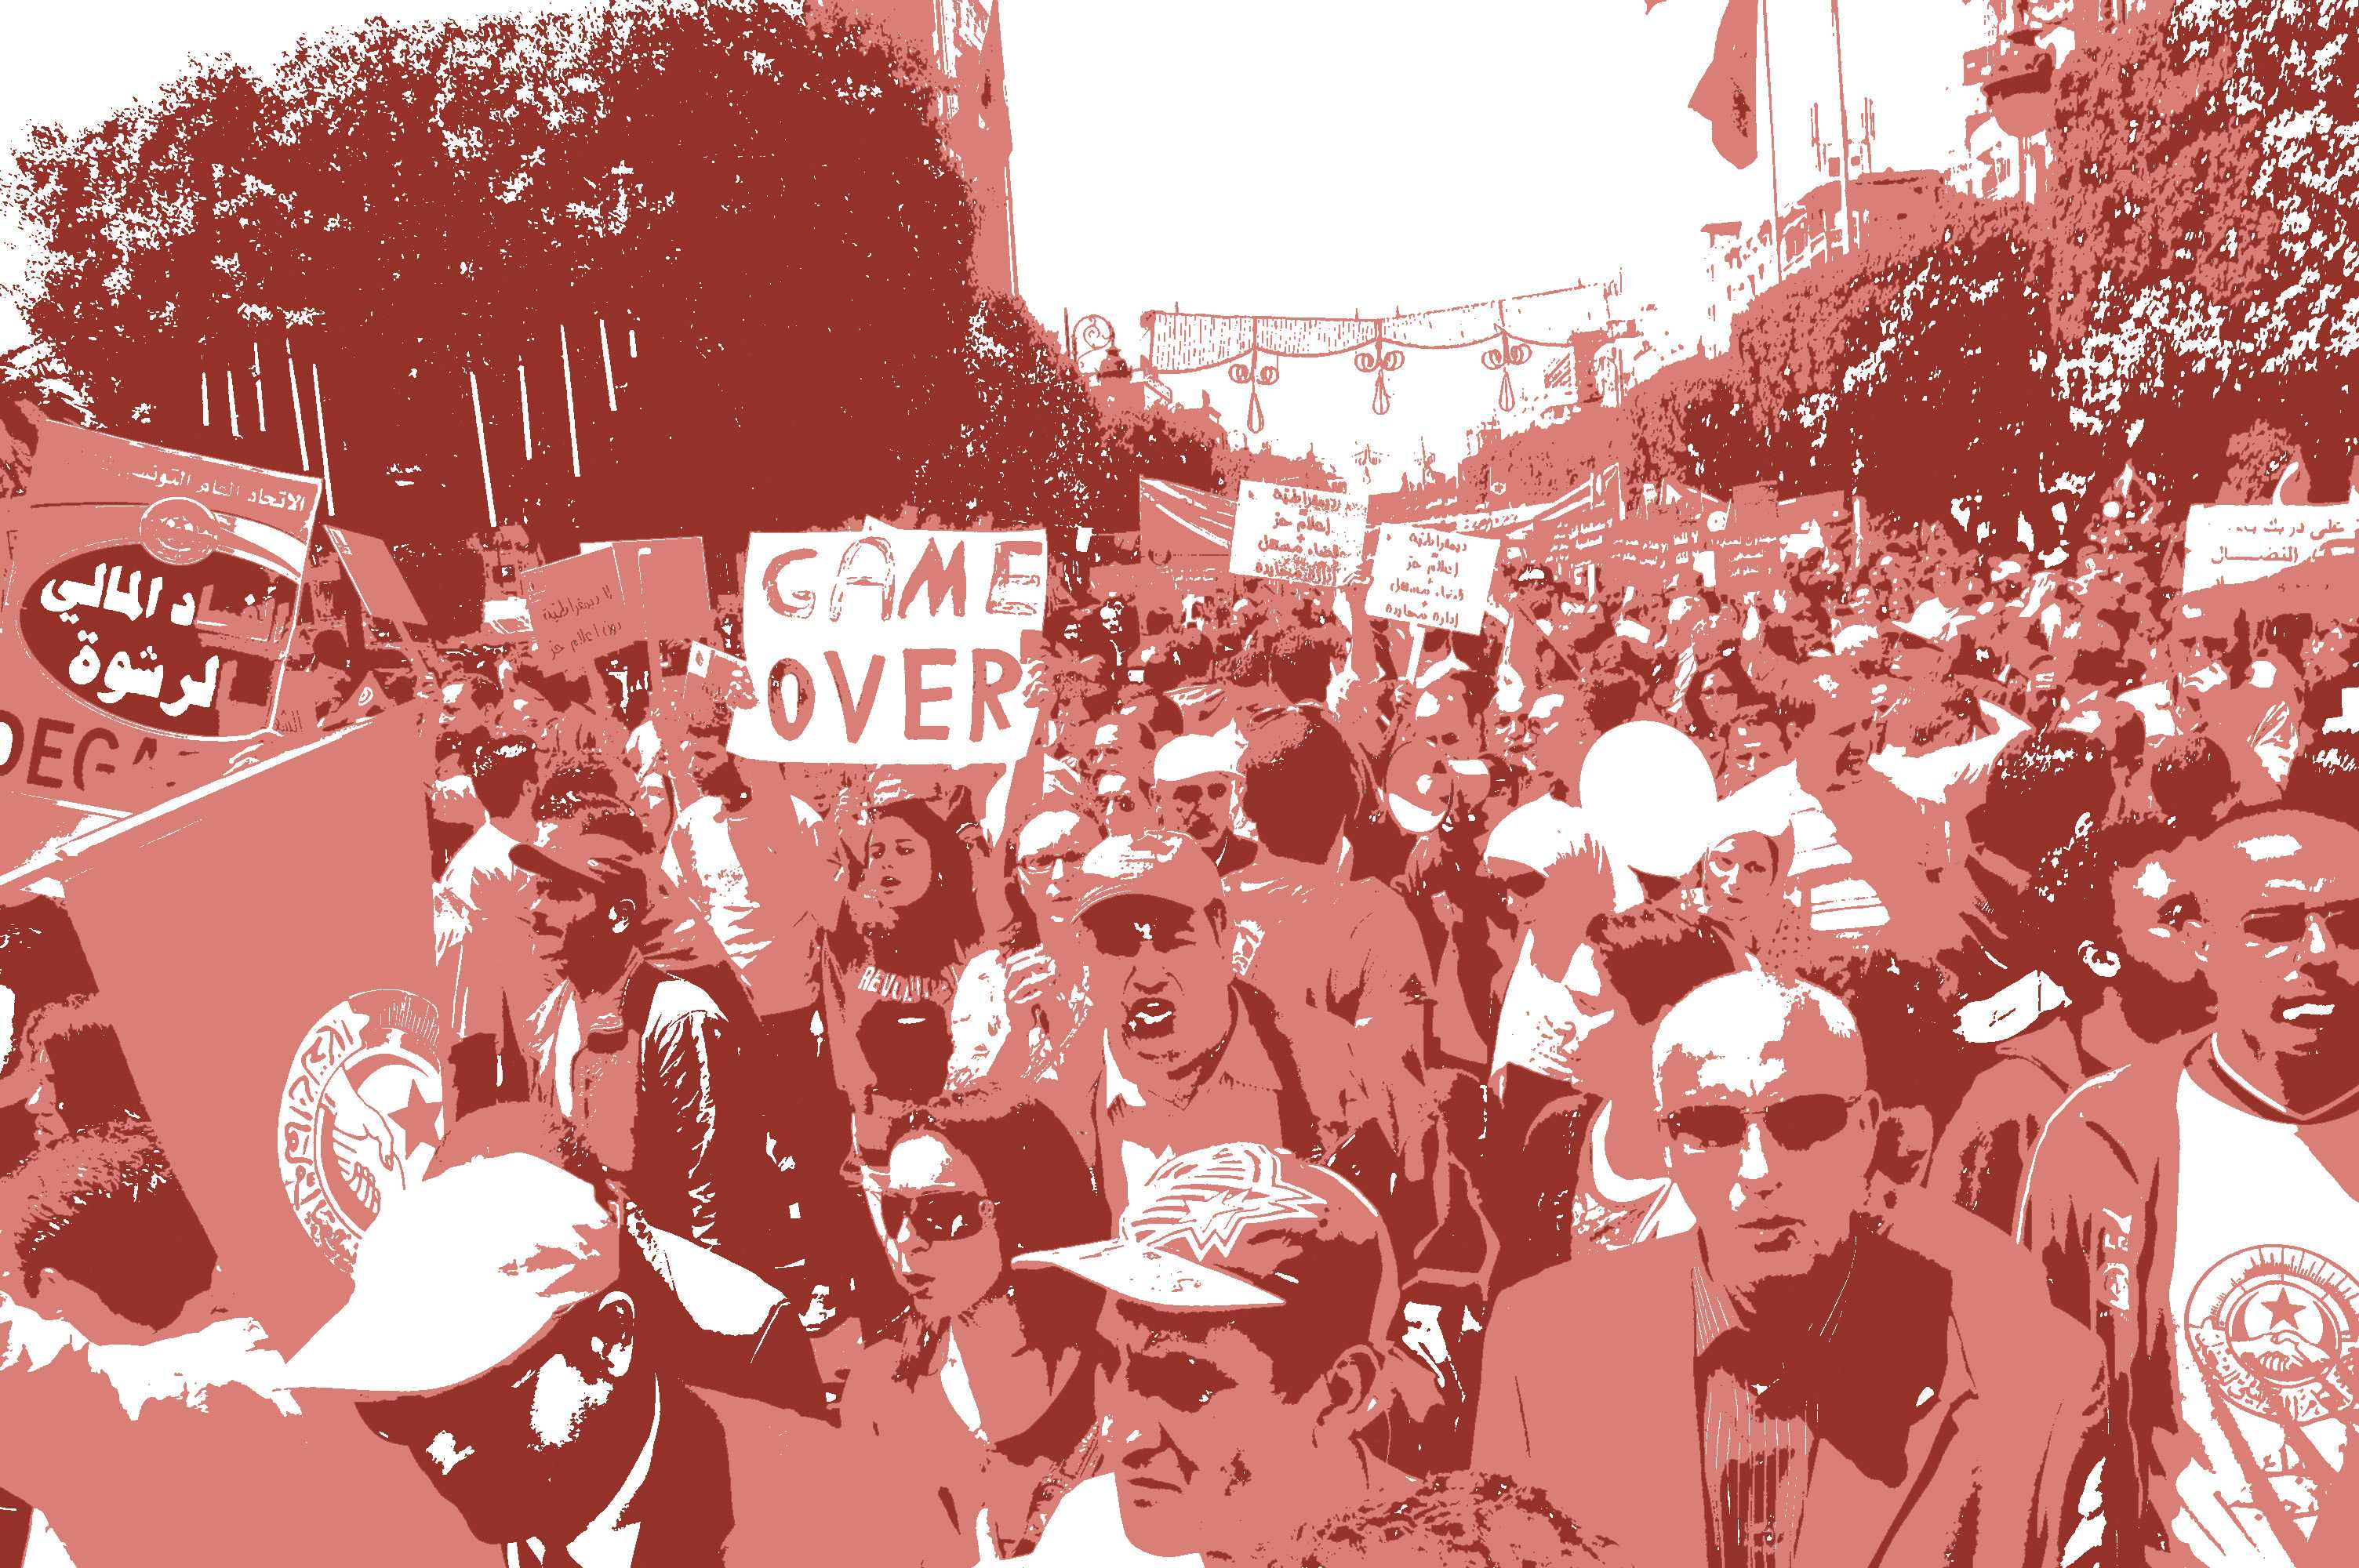 stilisiertes Bild von protestierenden Menschen. auf einem Schild steht Game Over.